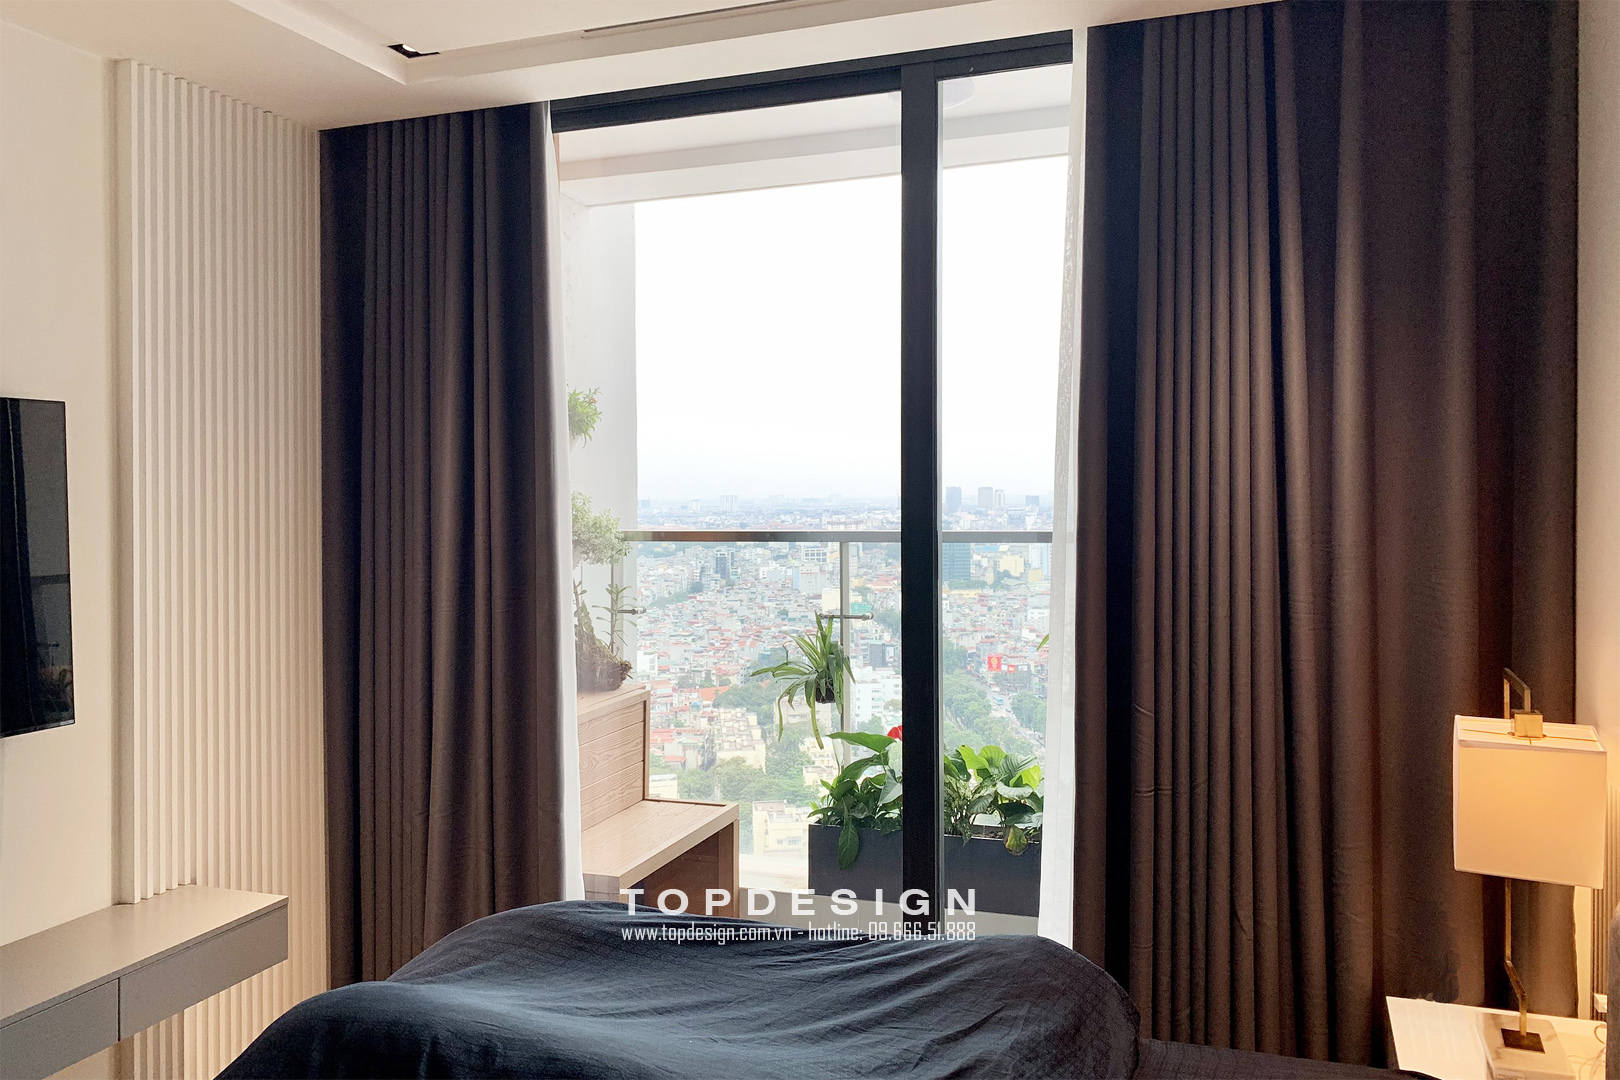 Mẫu căn hộ chung cư đẹp sang trọng cho căn hộ Vinhomes đẹp hiện đại cao cấp - Topdesign phòng ngủ